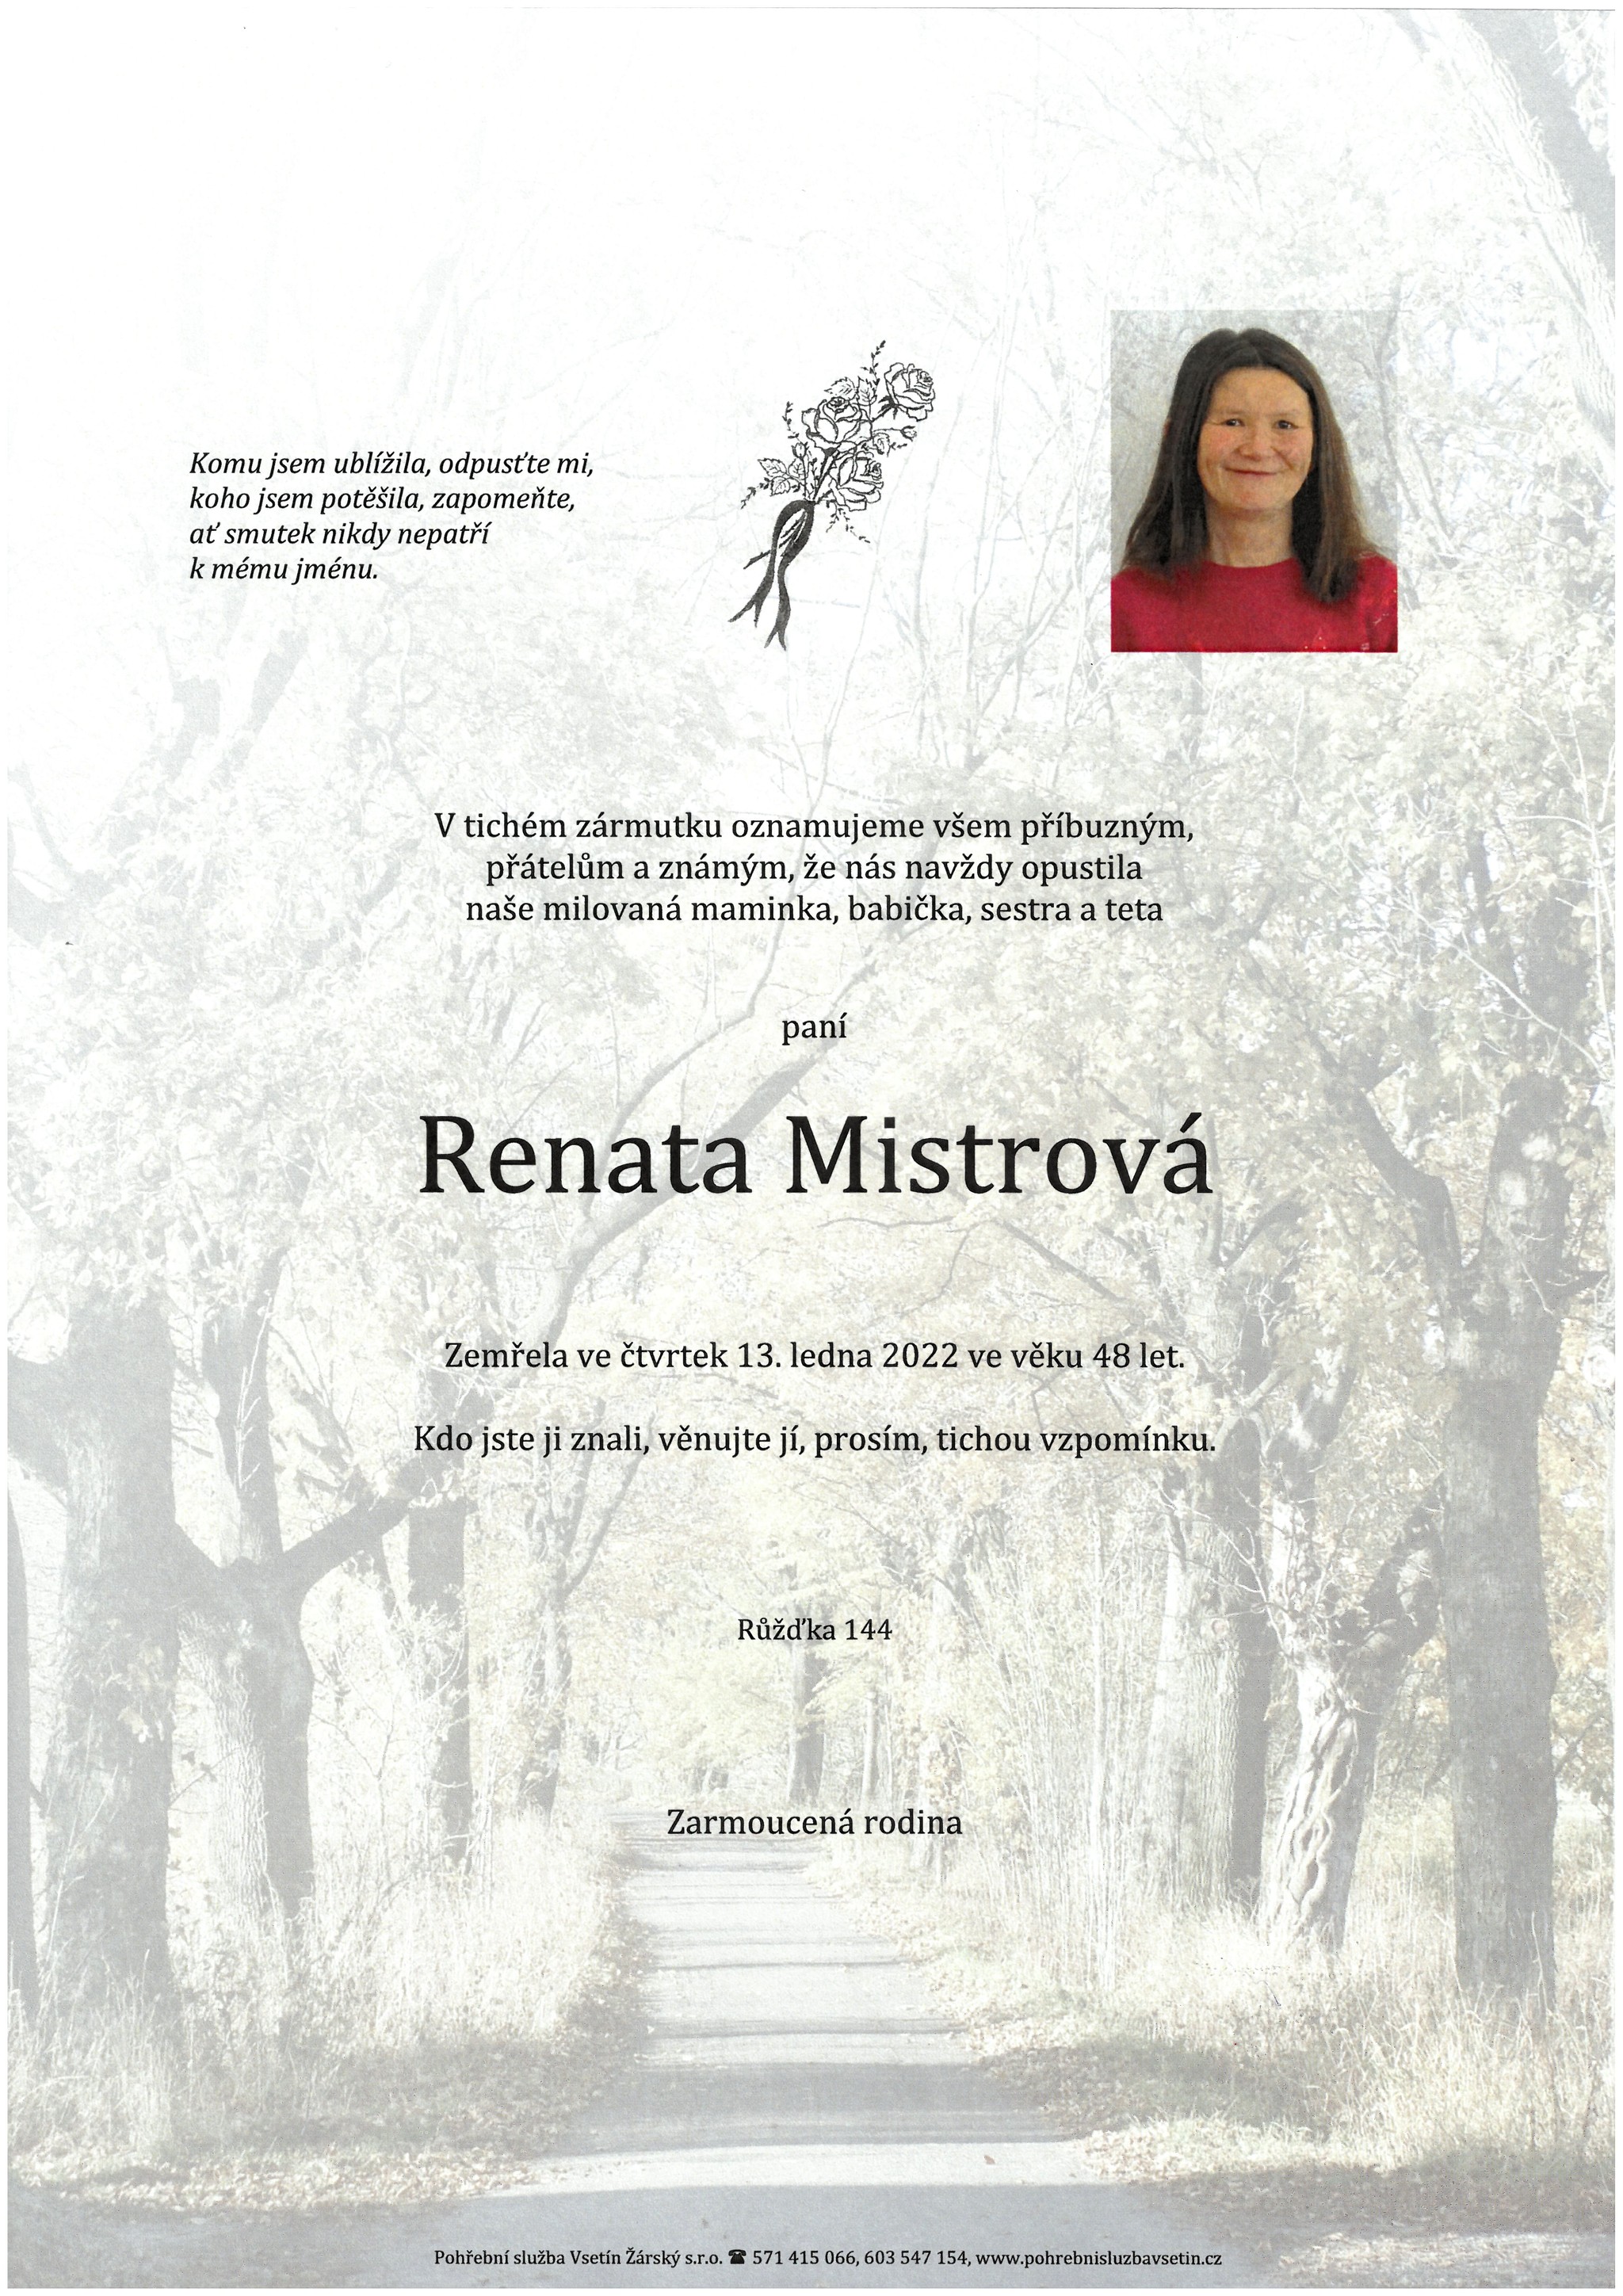 Renata Mistrová